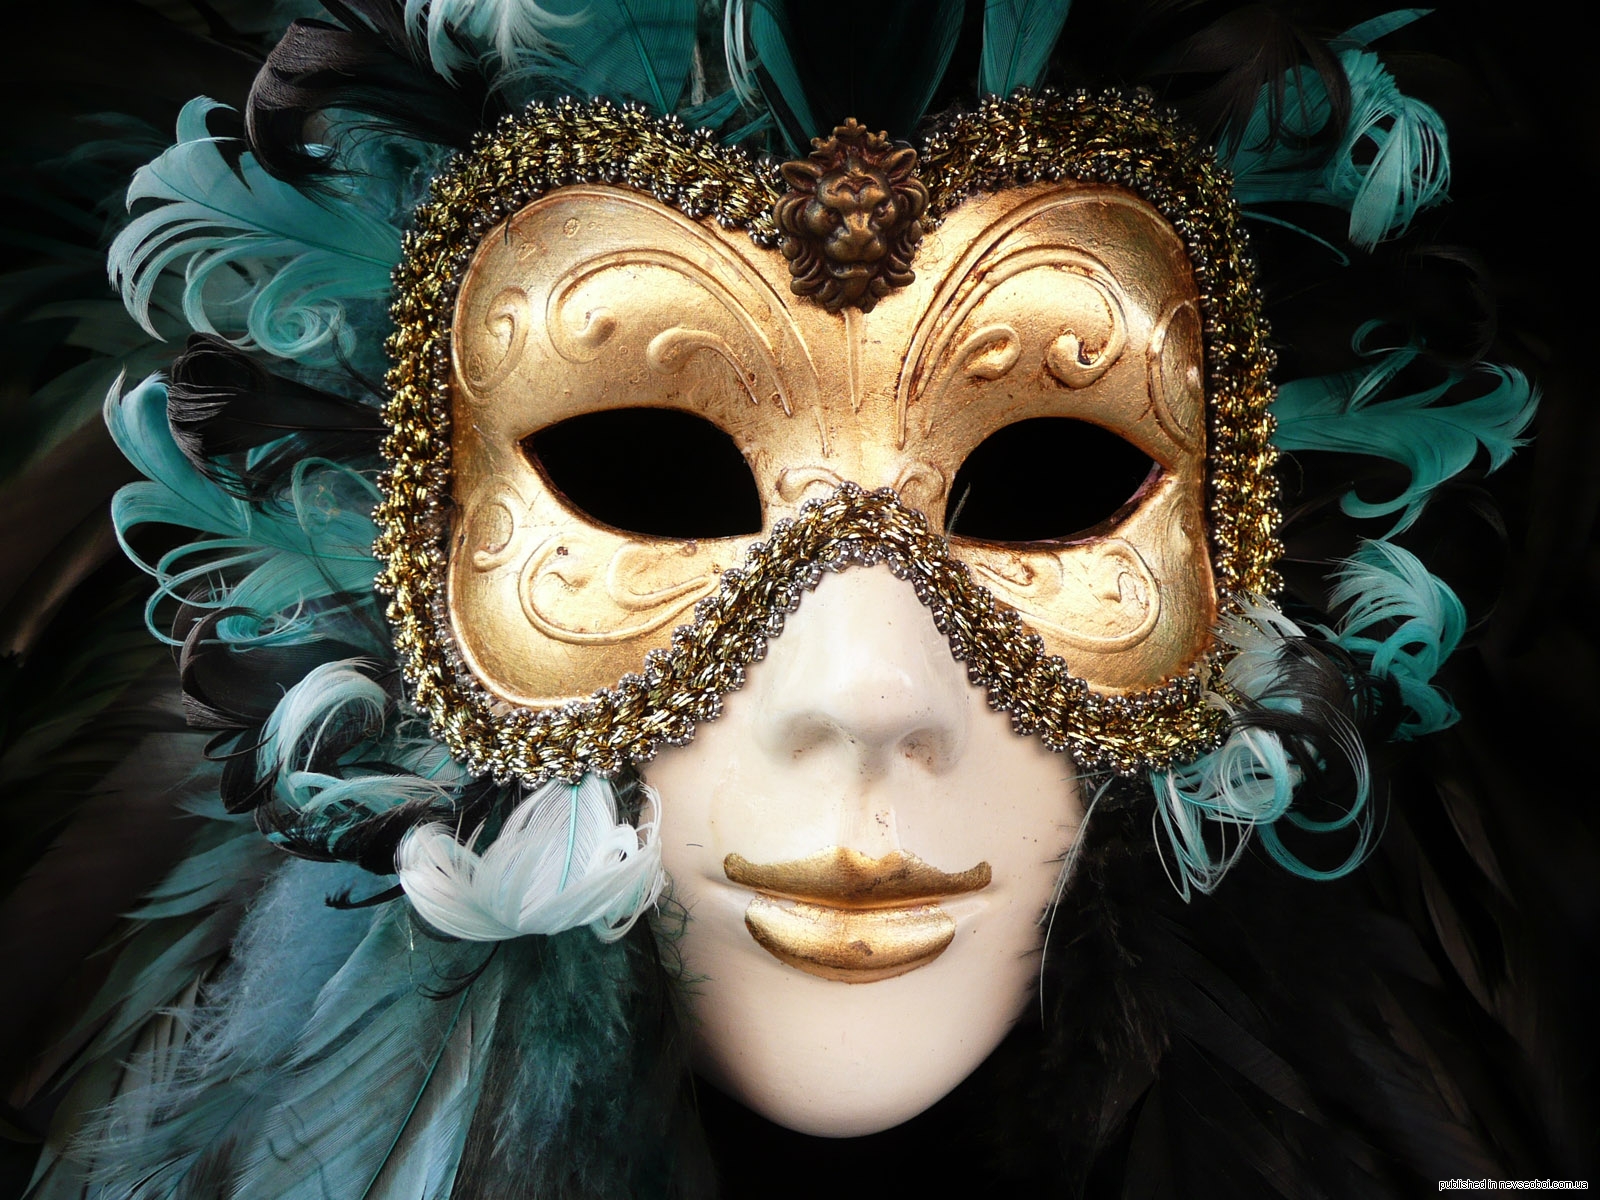 Хорошие маски на телефон. Джузеппе Верди "бал-маскарад". Венецианская маска Вольтер. Венецианская маска Арлекино. Венецианский карнавал Коломбина.